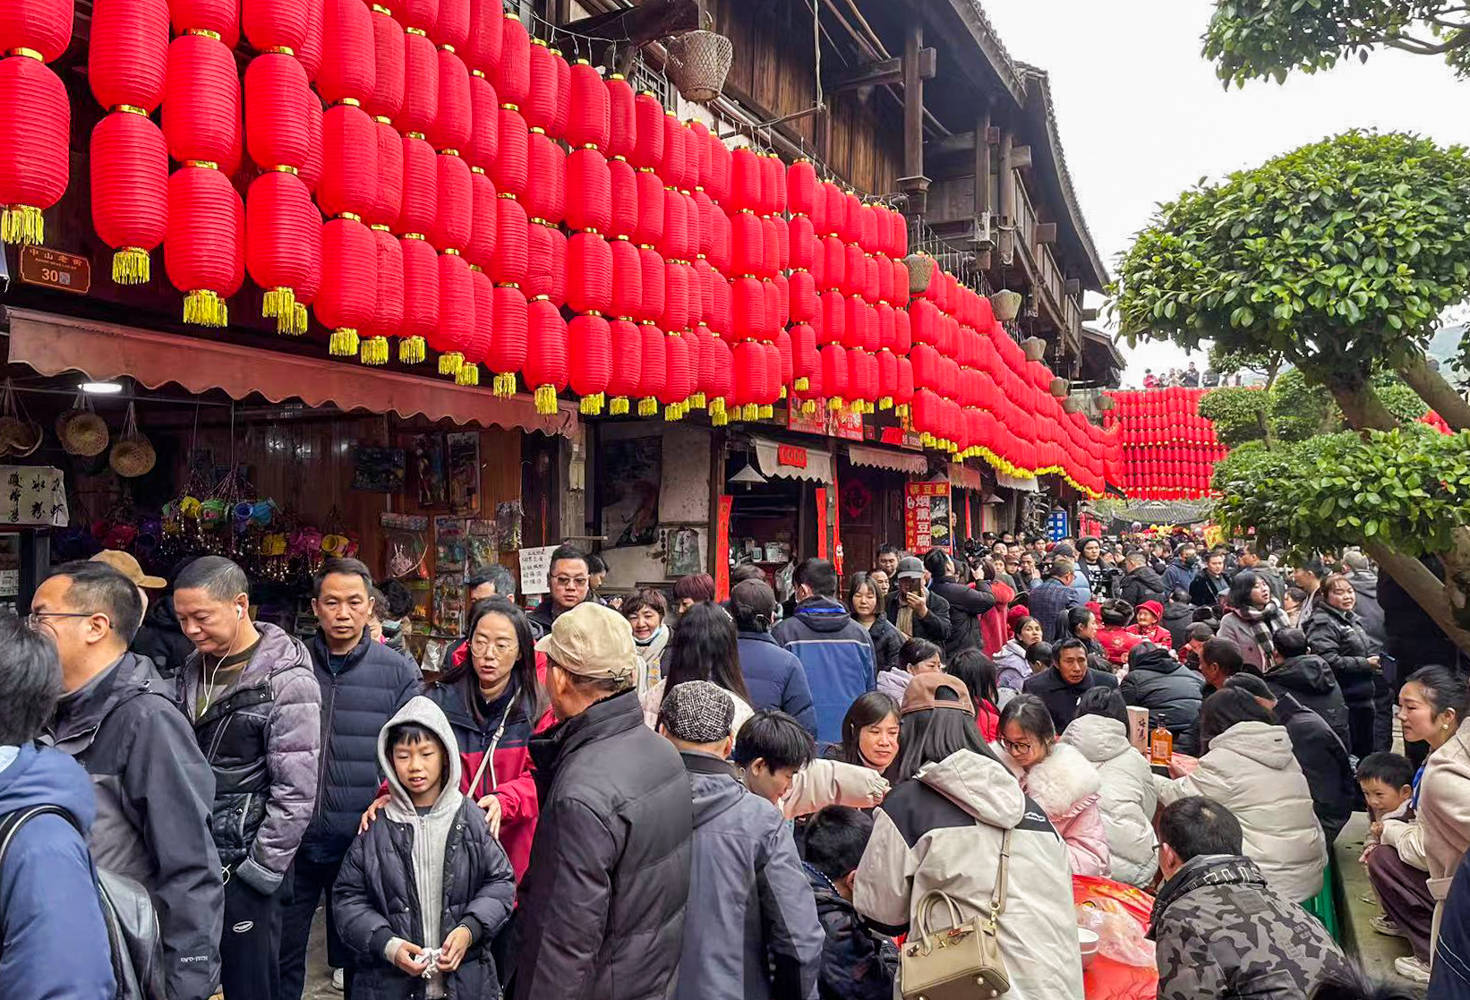 重庆年味纪实:中山古镇摆起千米长宴,游客品美食看非遗过大年